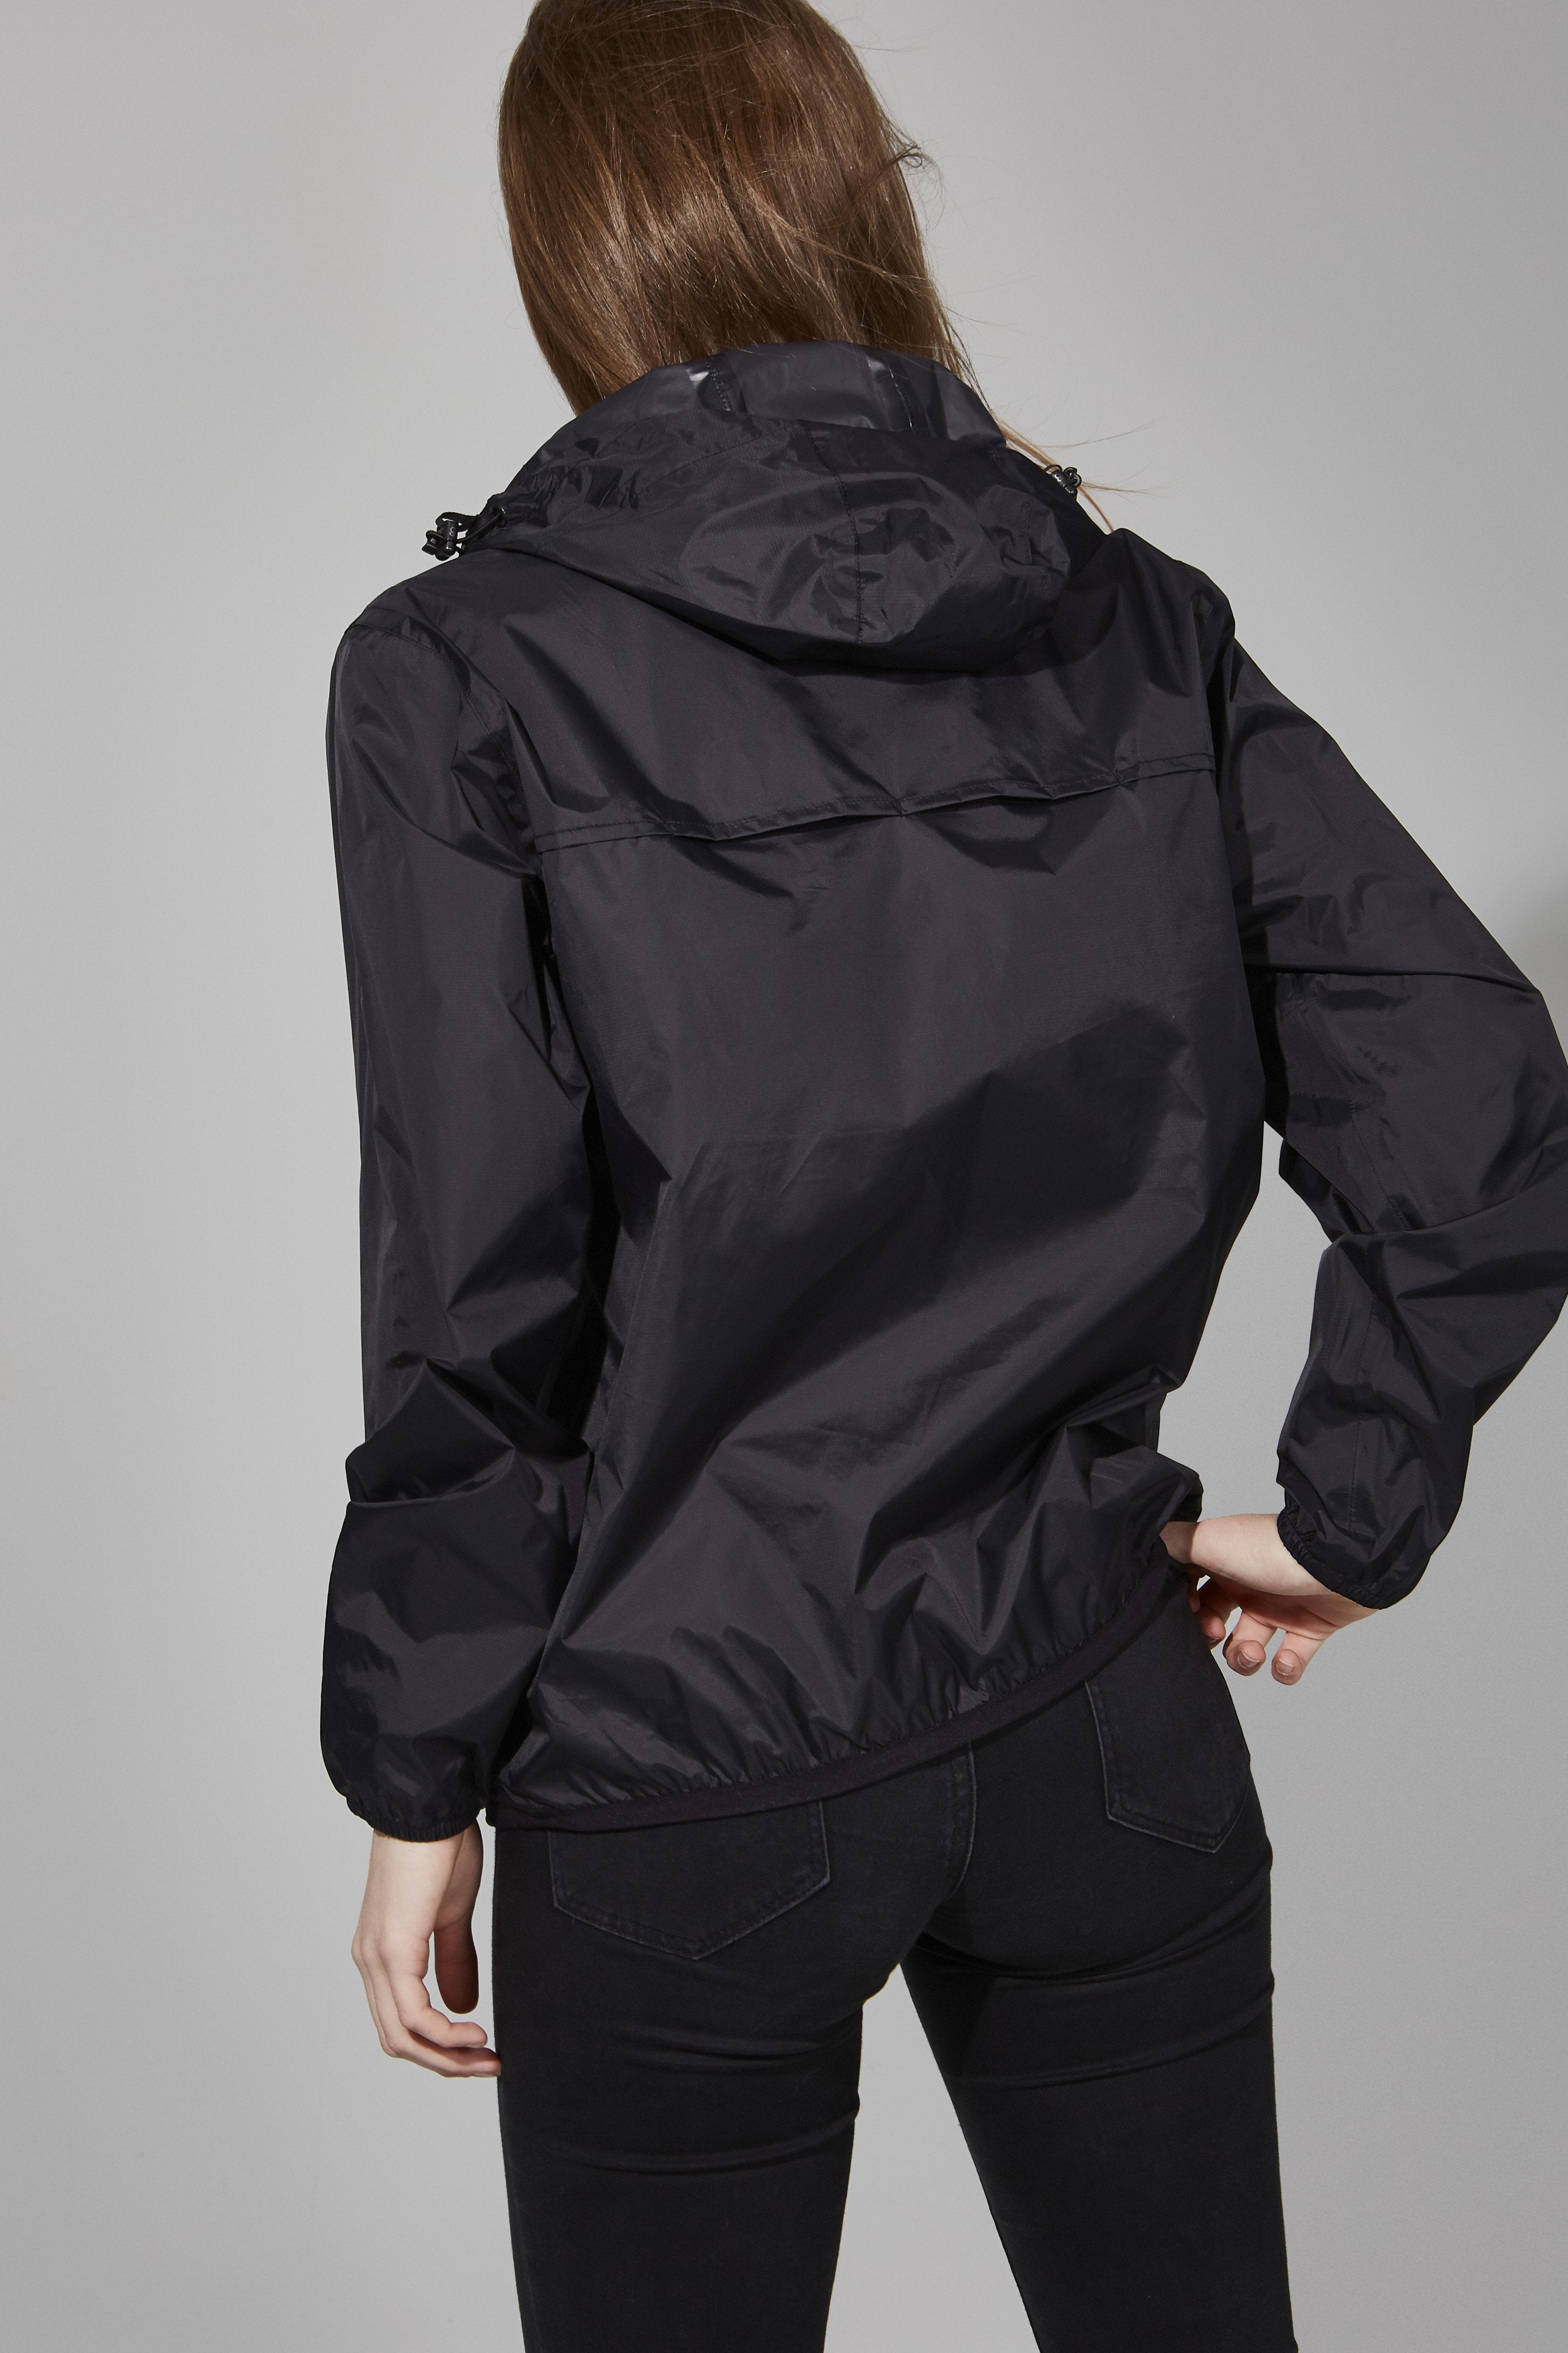 Alex - Black Quarter Zip Packable Rain Jacket - O8lifestyle.